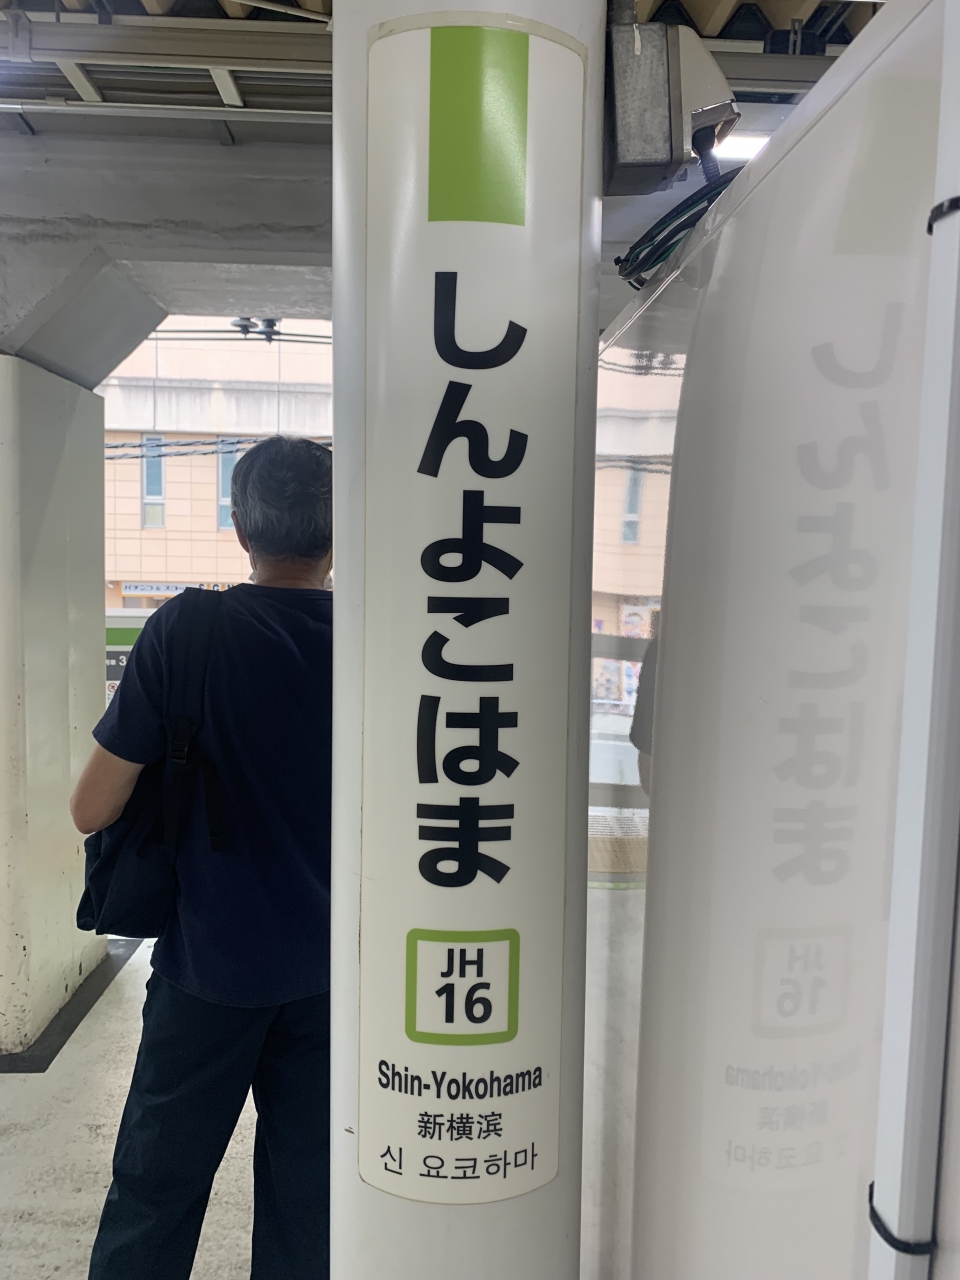 新横浜〜京都の新幹線 料金・運賃と割引きっぷ | レイルラボ(RailLab)